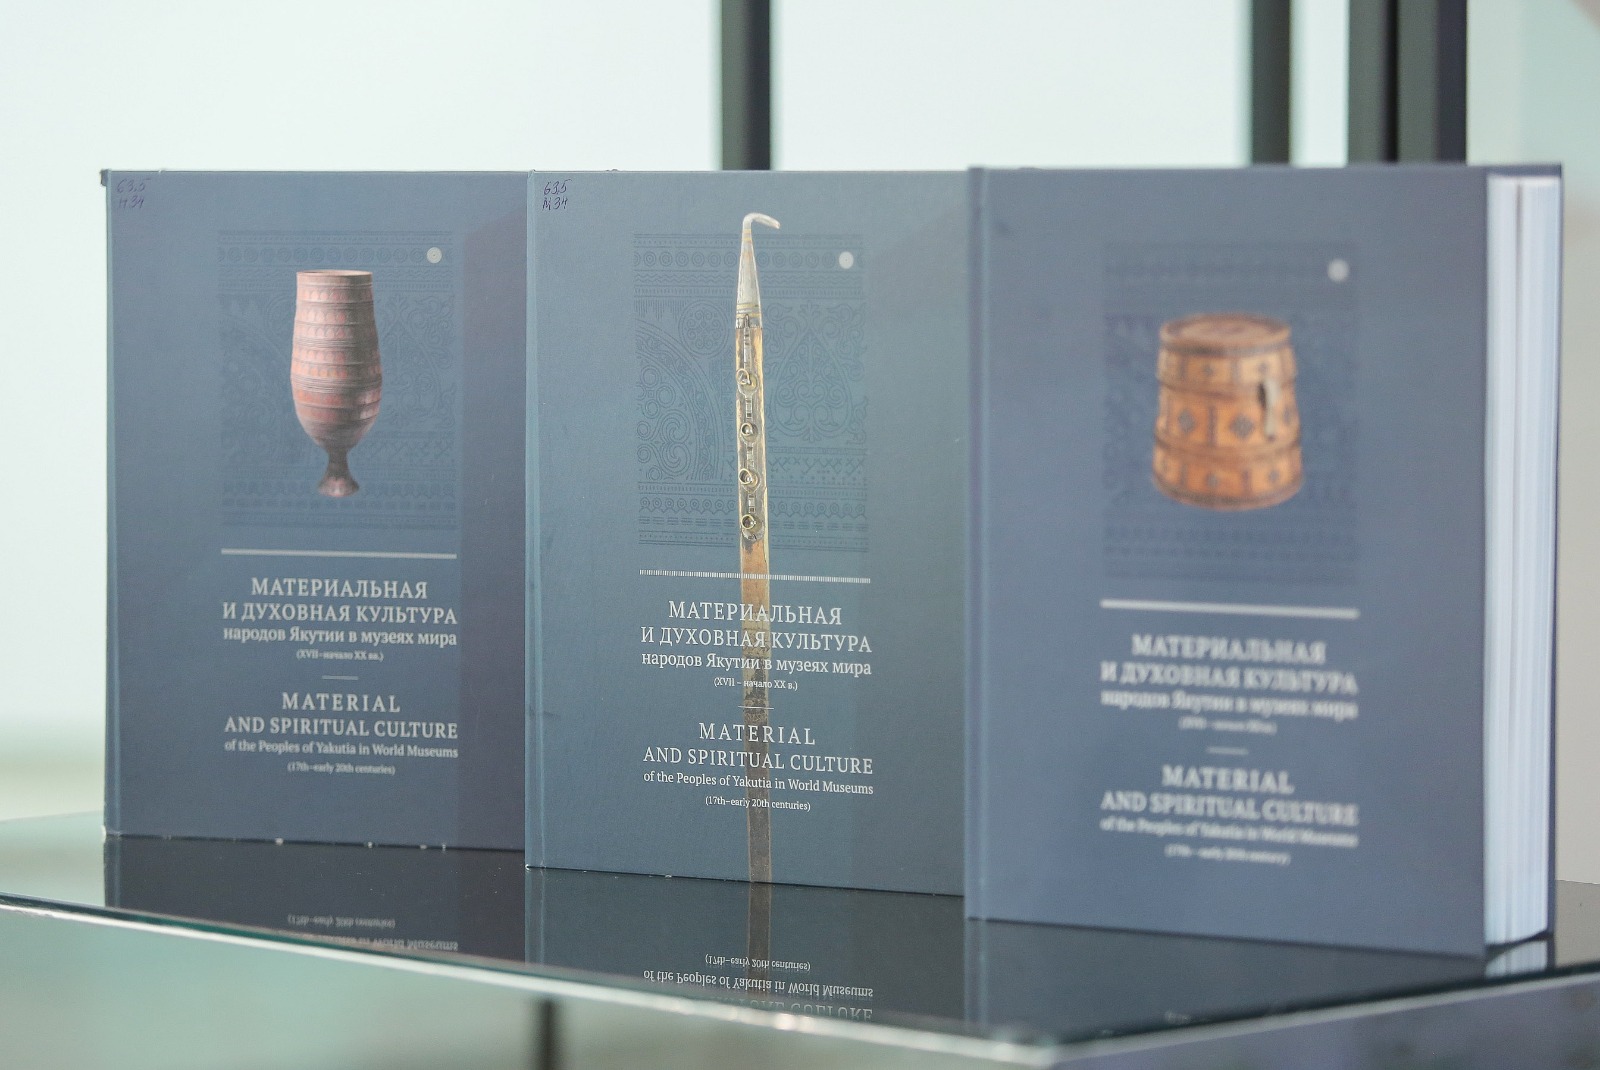 Альбом-каталог коллекций культурных ценностей коренных народов республики выпустили в Якутии